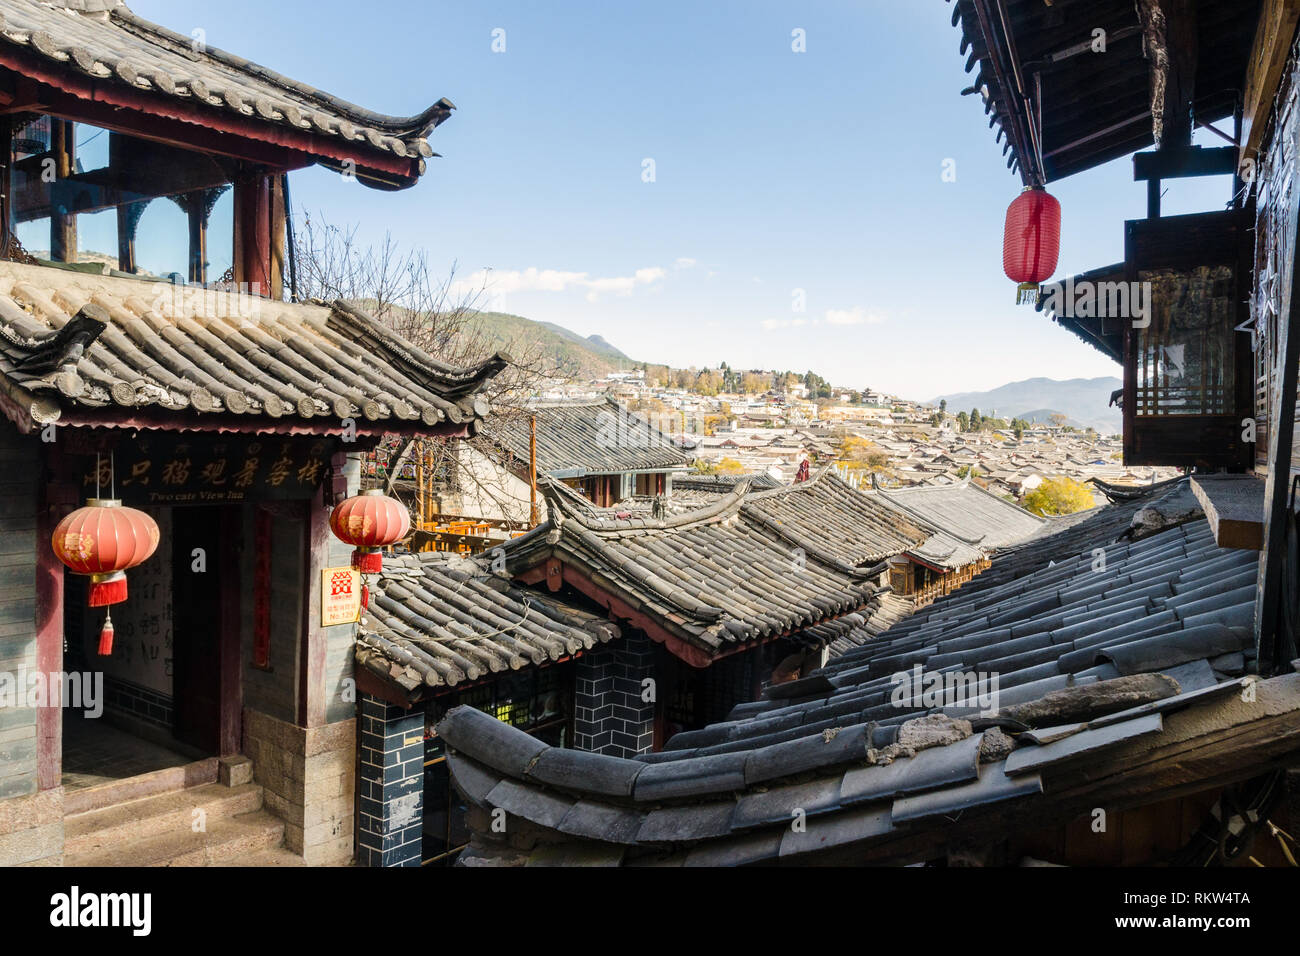 Vieille ville de Lijiang avec son sol carrelé glacé traditionnel chinois les toits, Lijiang, Yunnan, Chine Banque D'Images